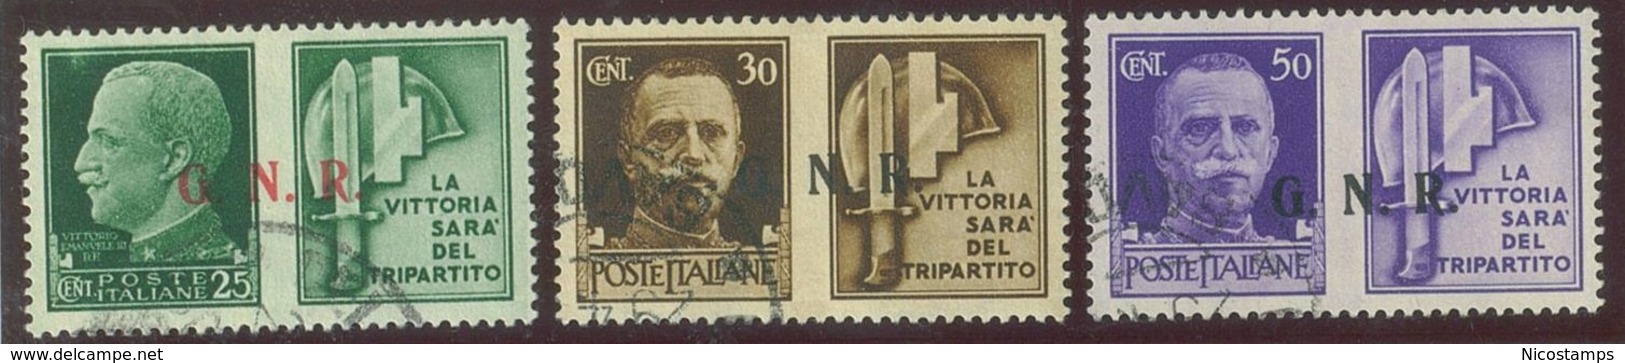 ITALIA REPUBBLICA SOCIALE ITALIANA (R.S.I.) SASS. P.G. 13/III - 24/III  USATI - Propaganda Di Guerra